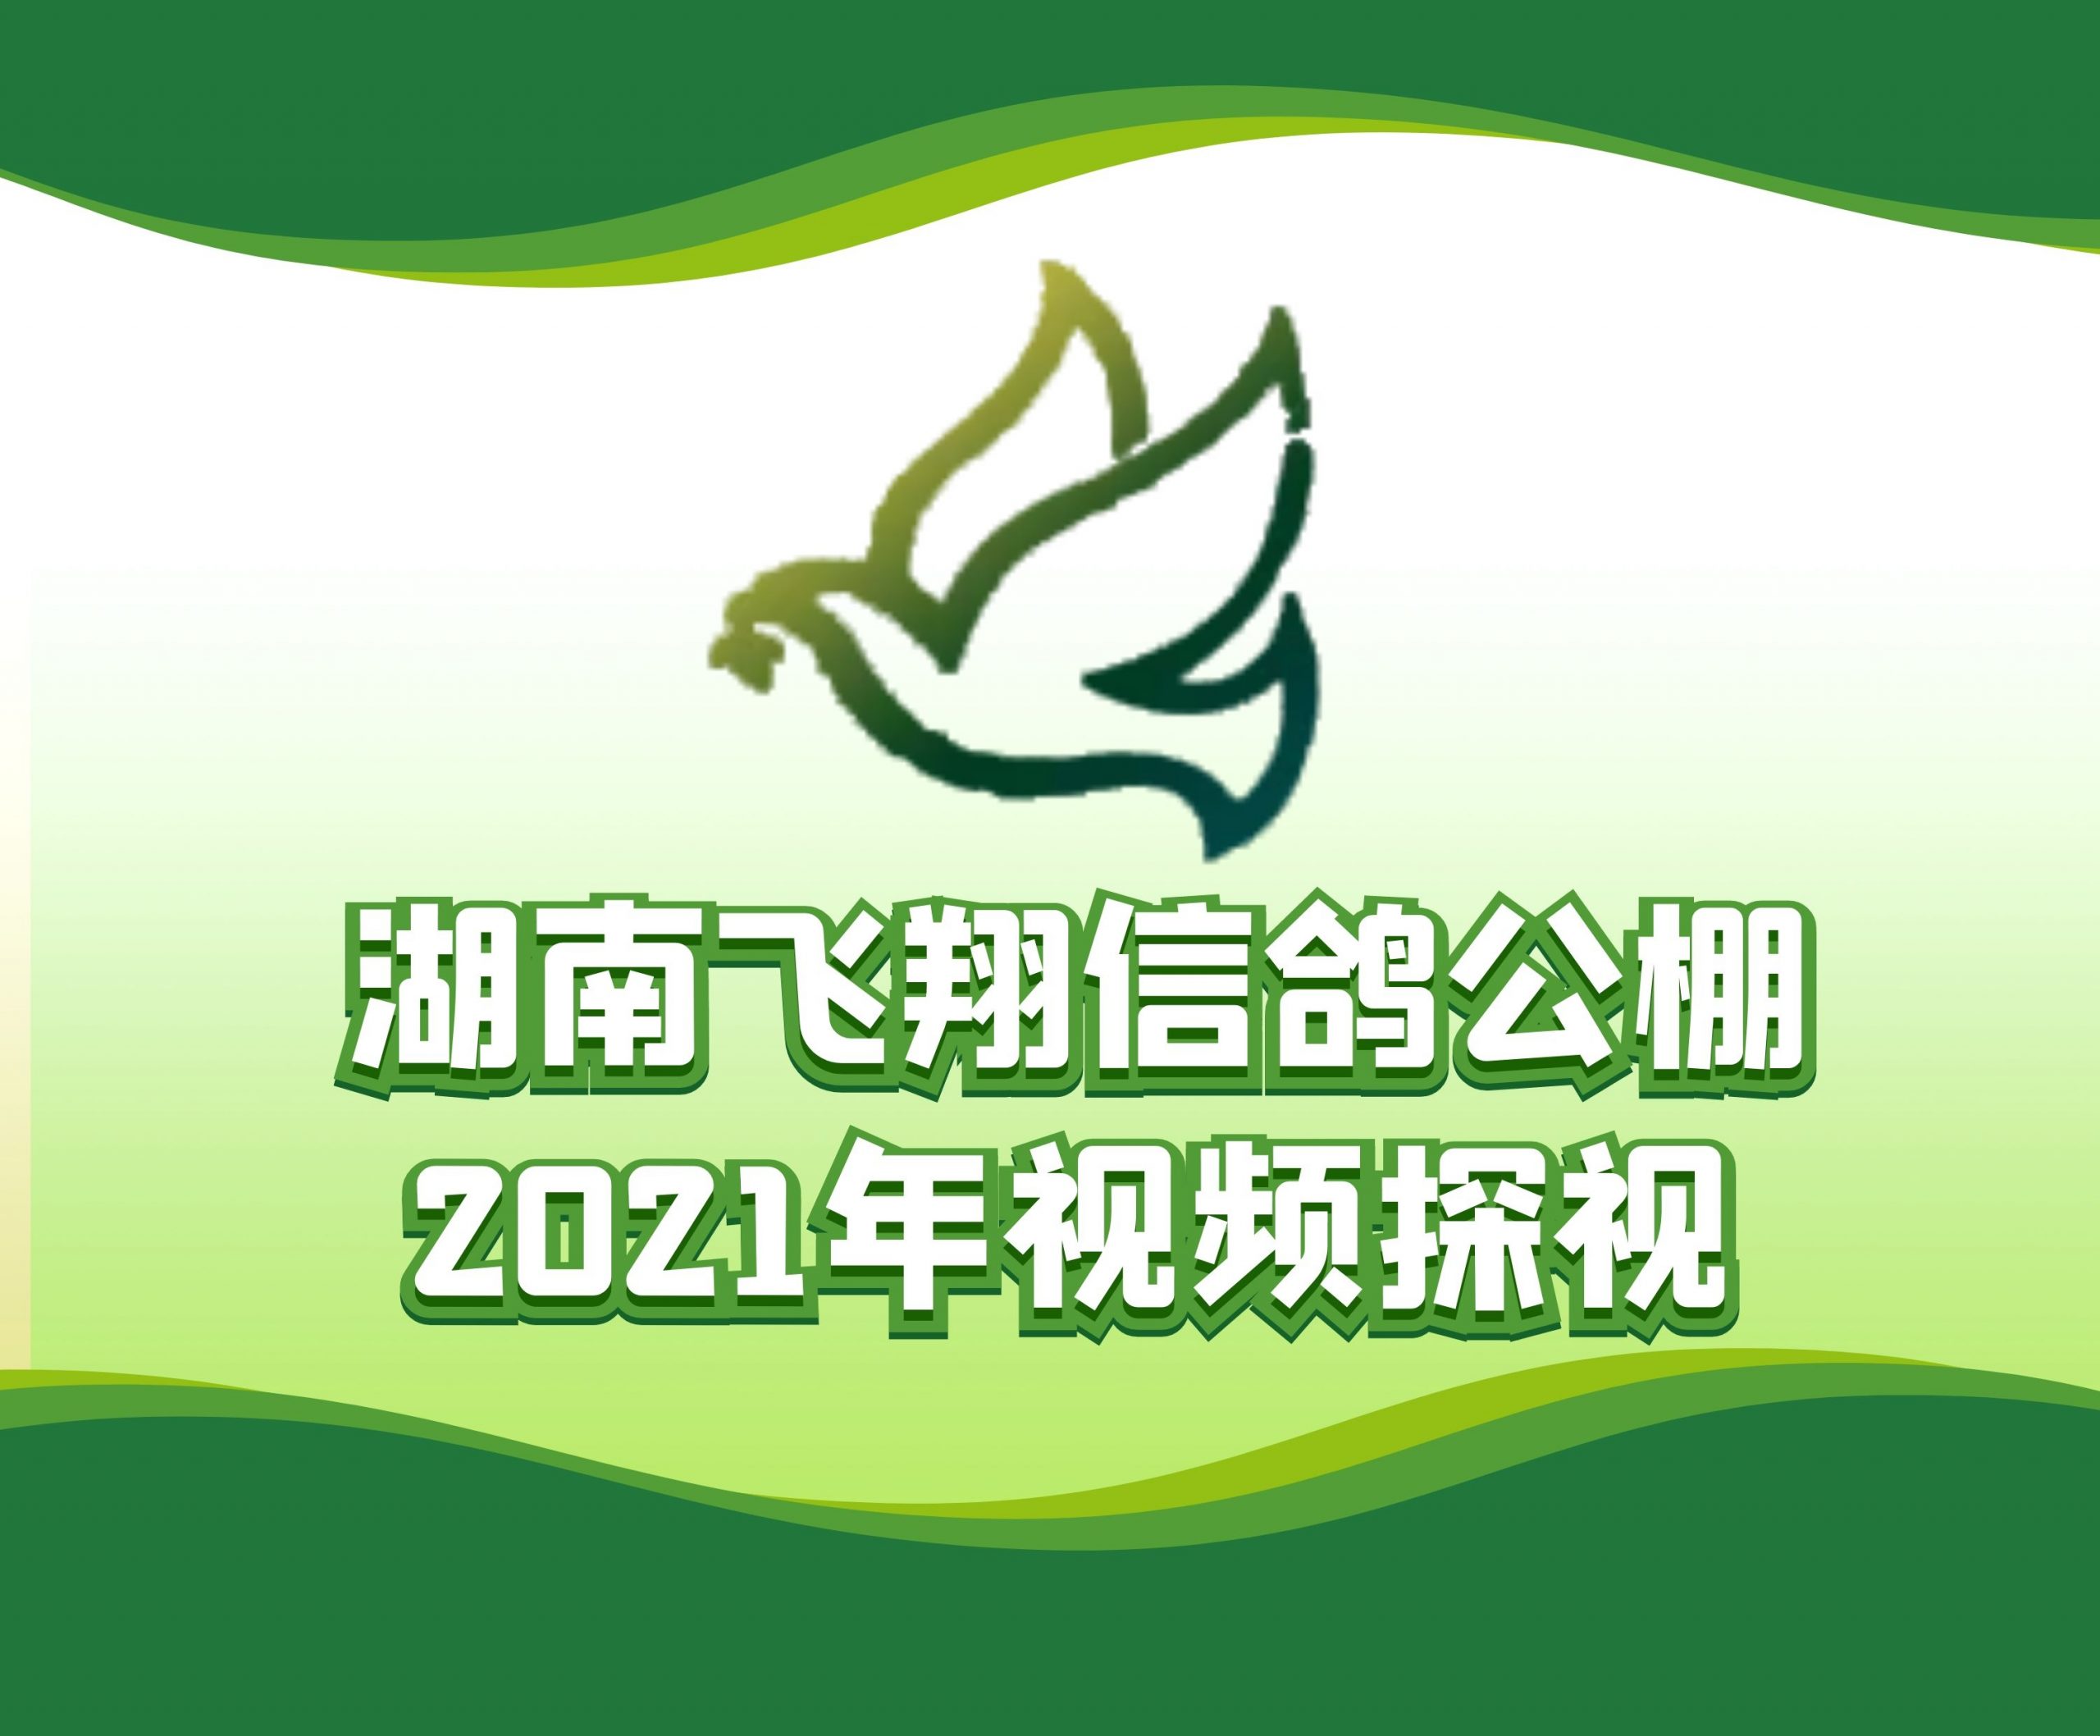 中天鸽业-尖刀-严文亮-2021-18-0099782